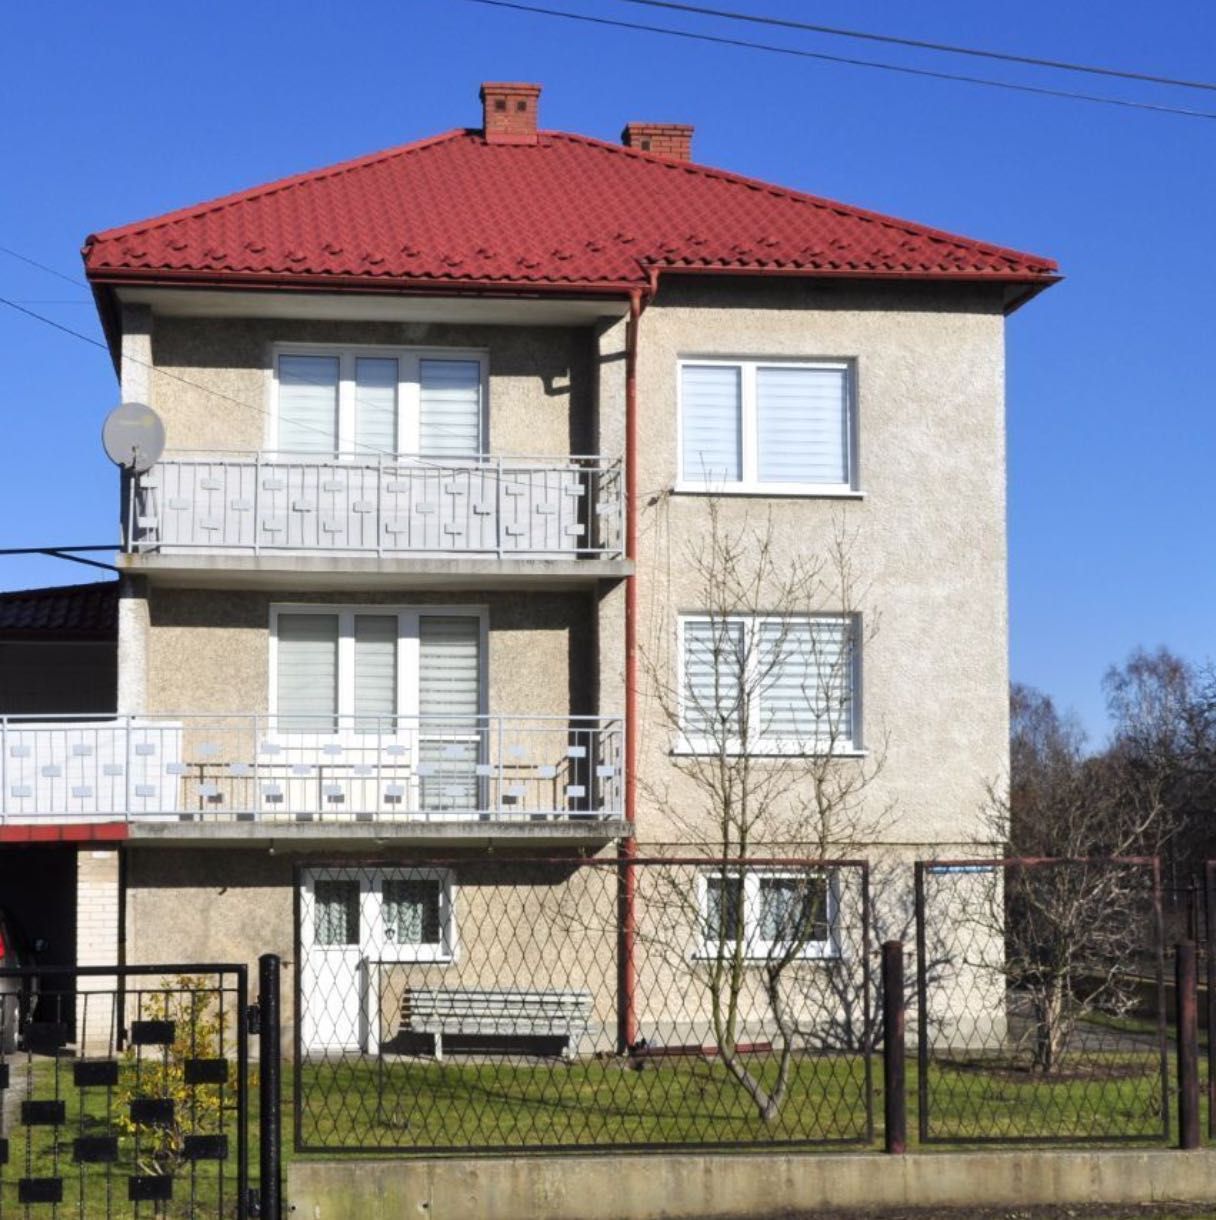 Sprzedam dom w Pogorzycach 3 piętrowy 150m2 powierzchni użytkowej